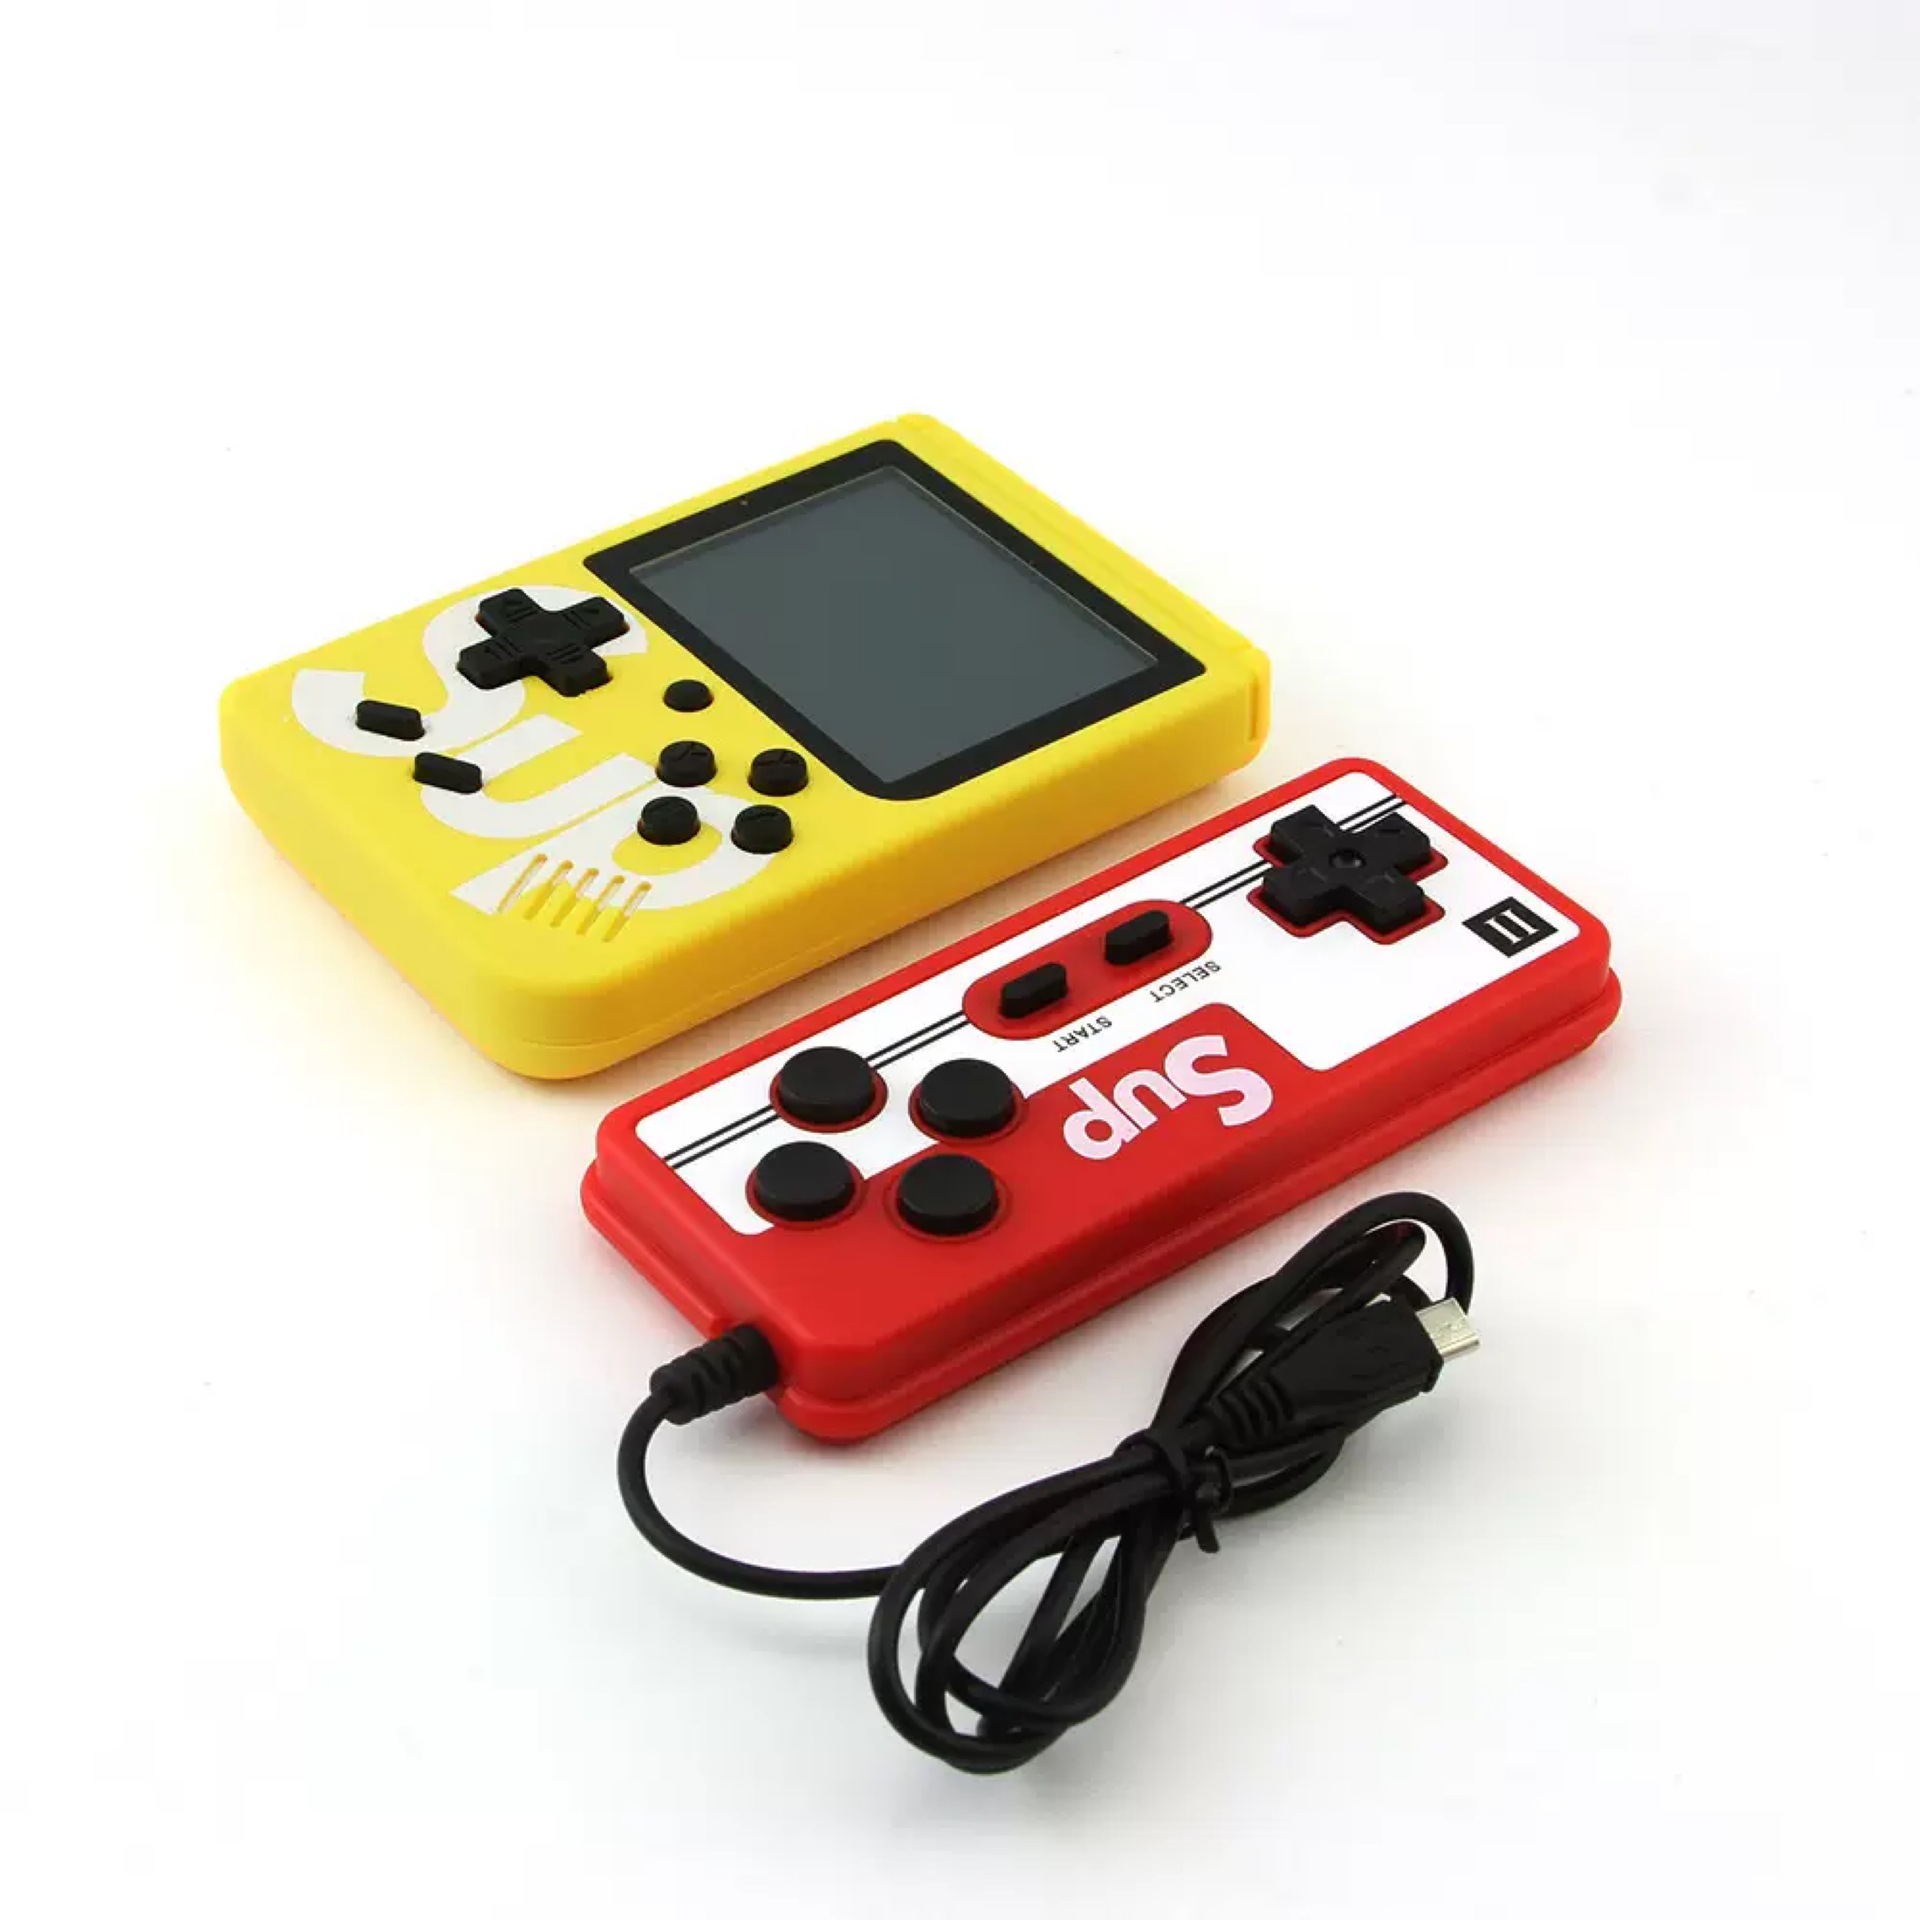 фото Портативная игровая консоль qvatra game box 8 бит 400 игр с джойстиком желтый